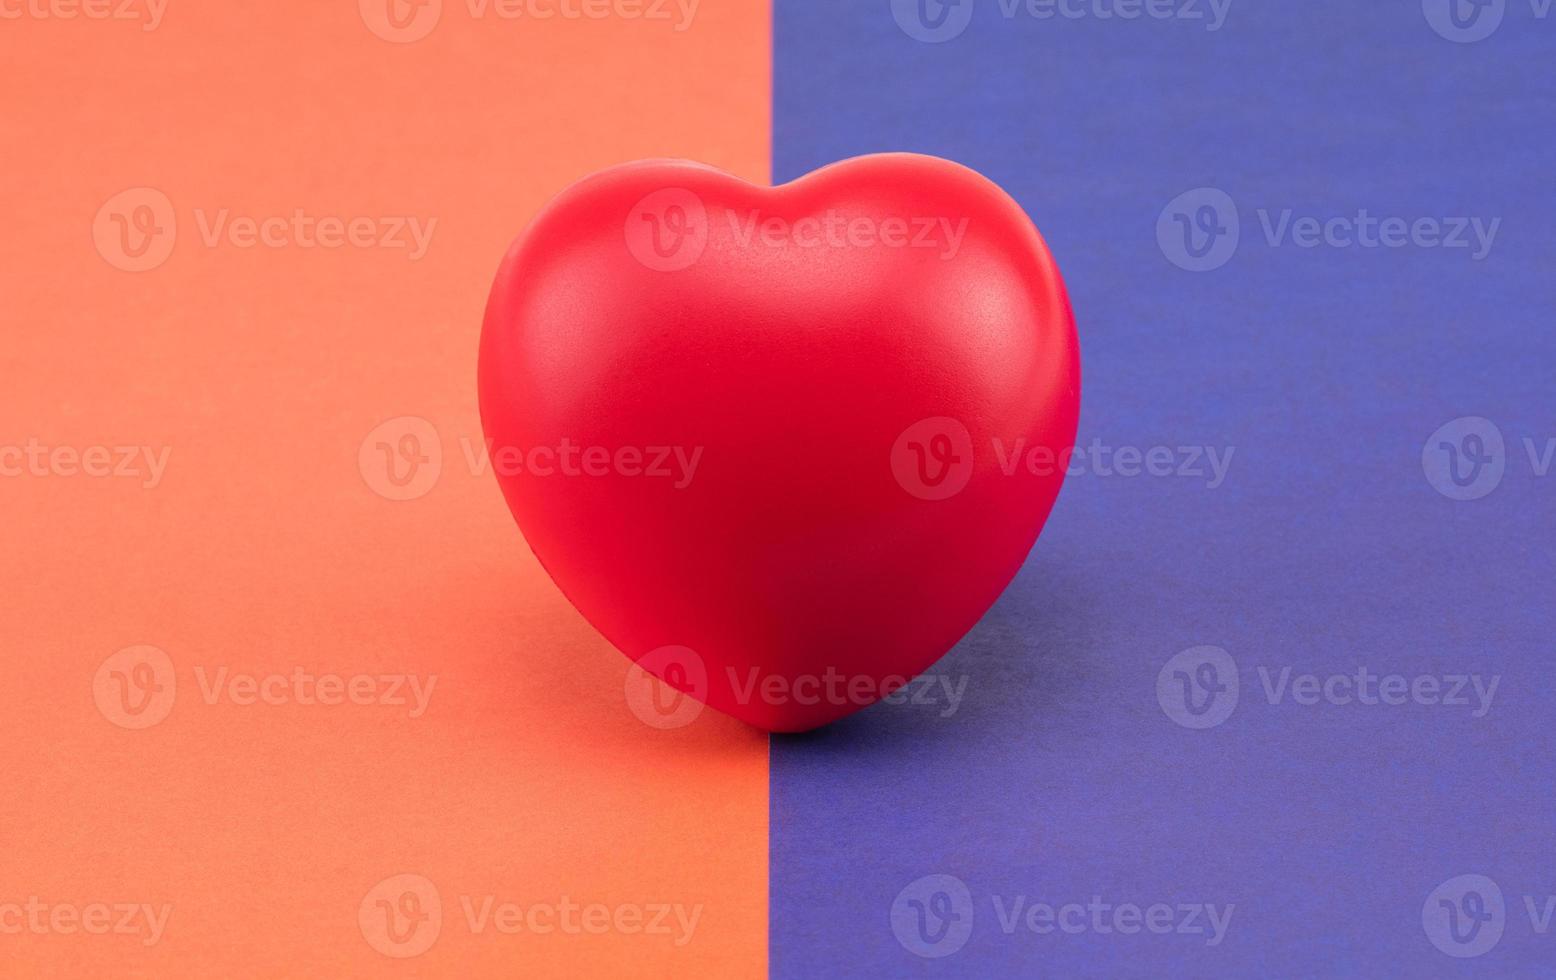 coeur de jouet sur fond coloré. concept de soins de santé. cardiologie - soins du coeur photo